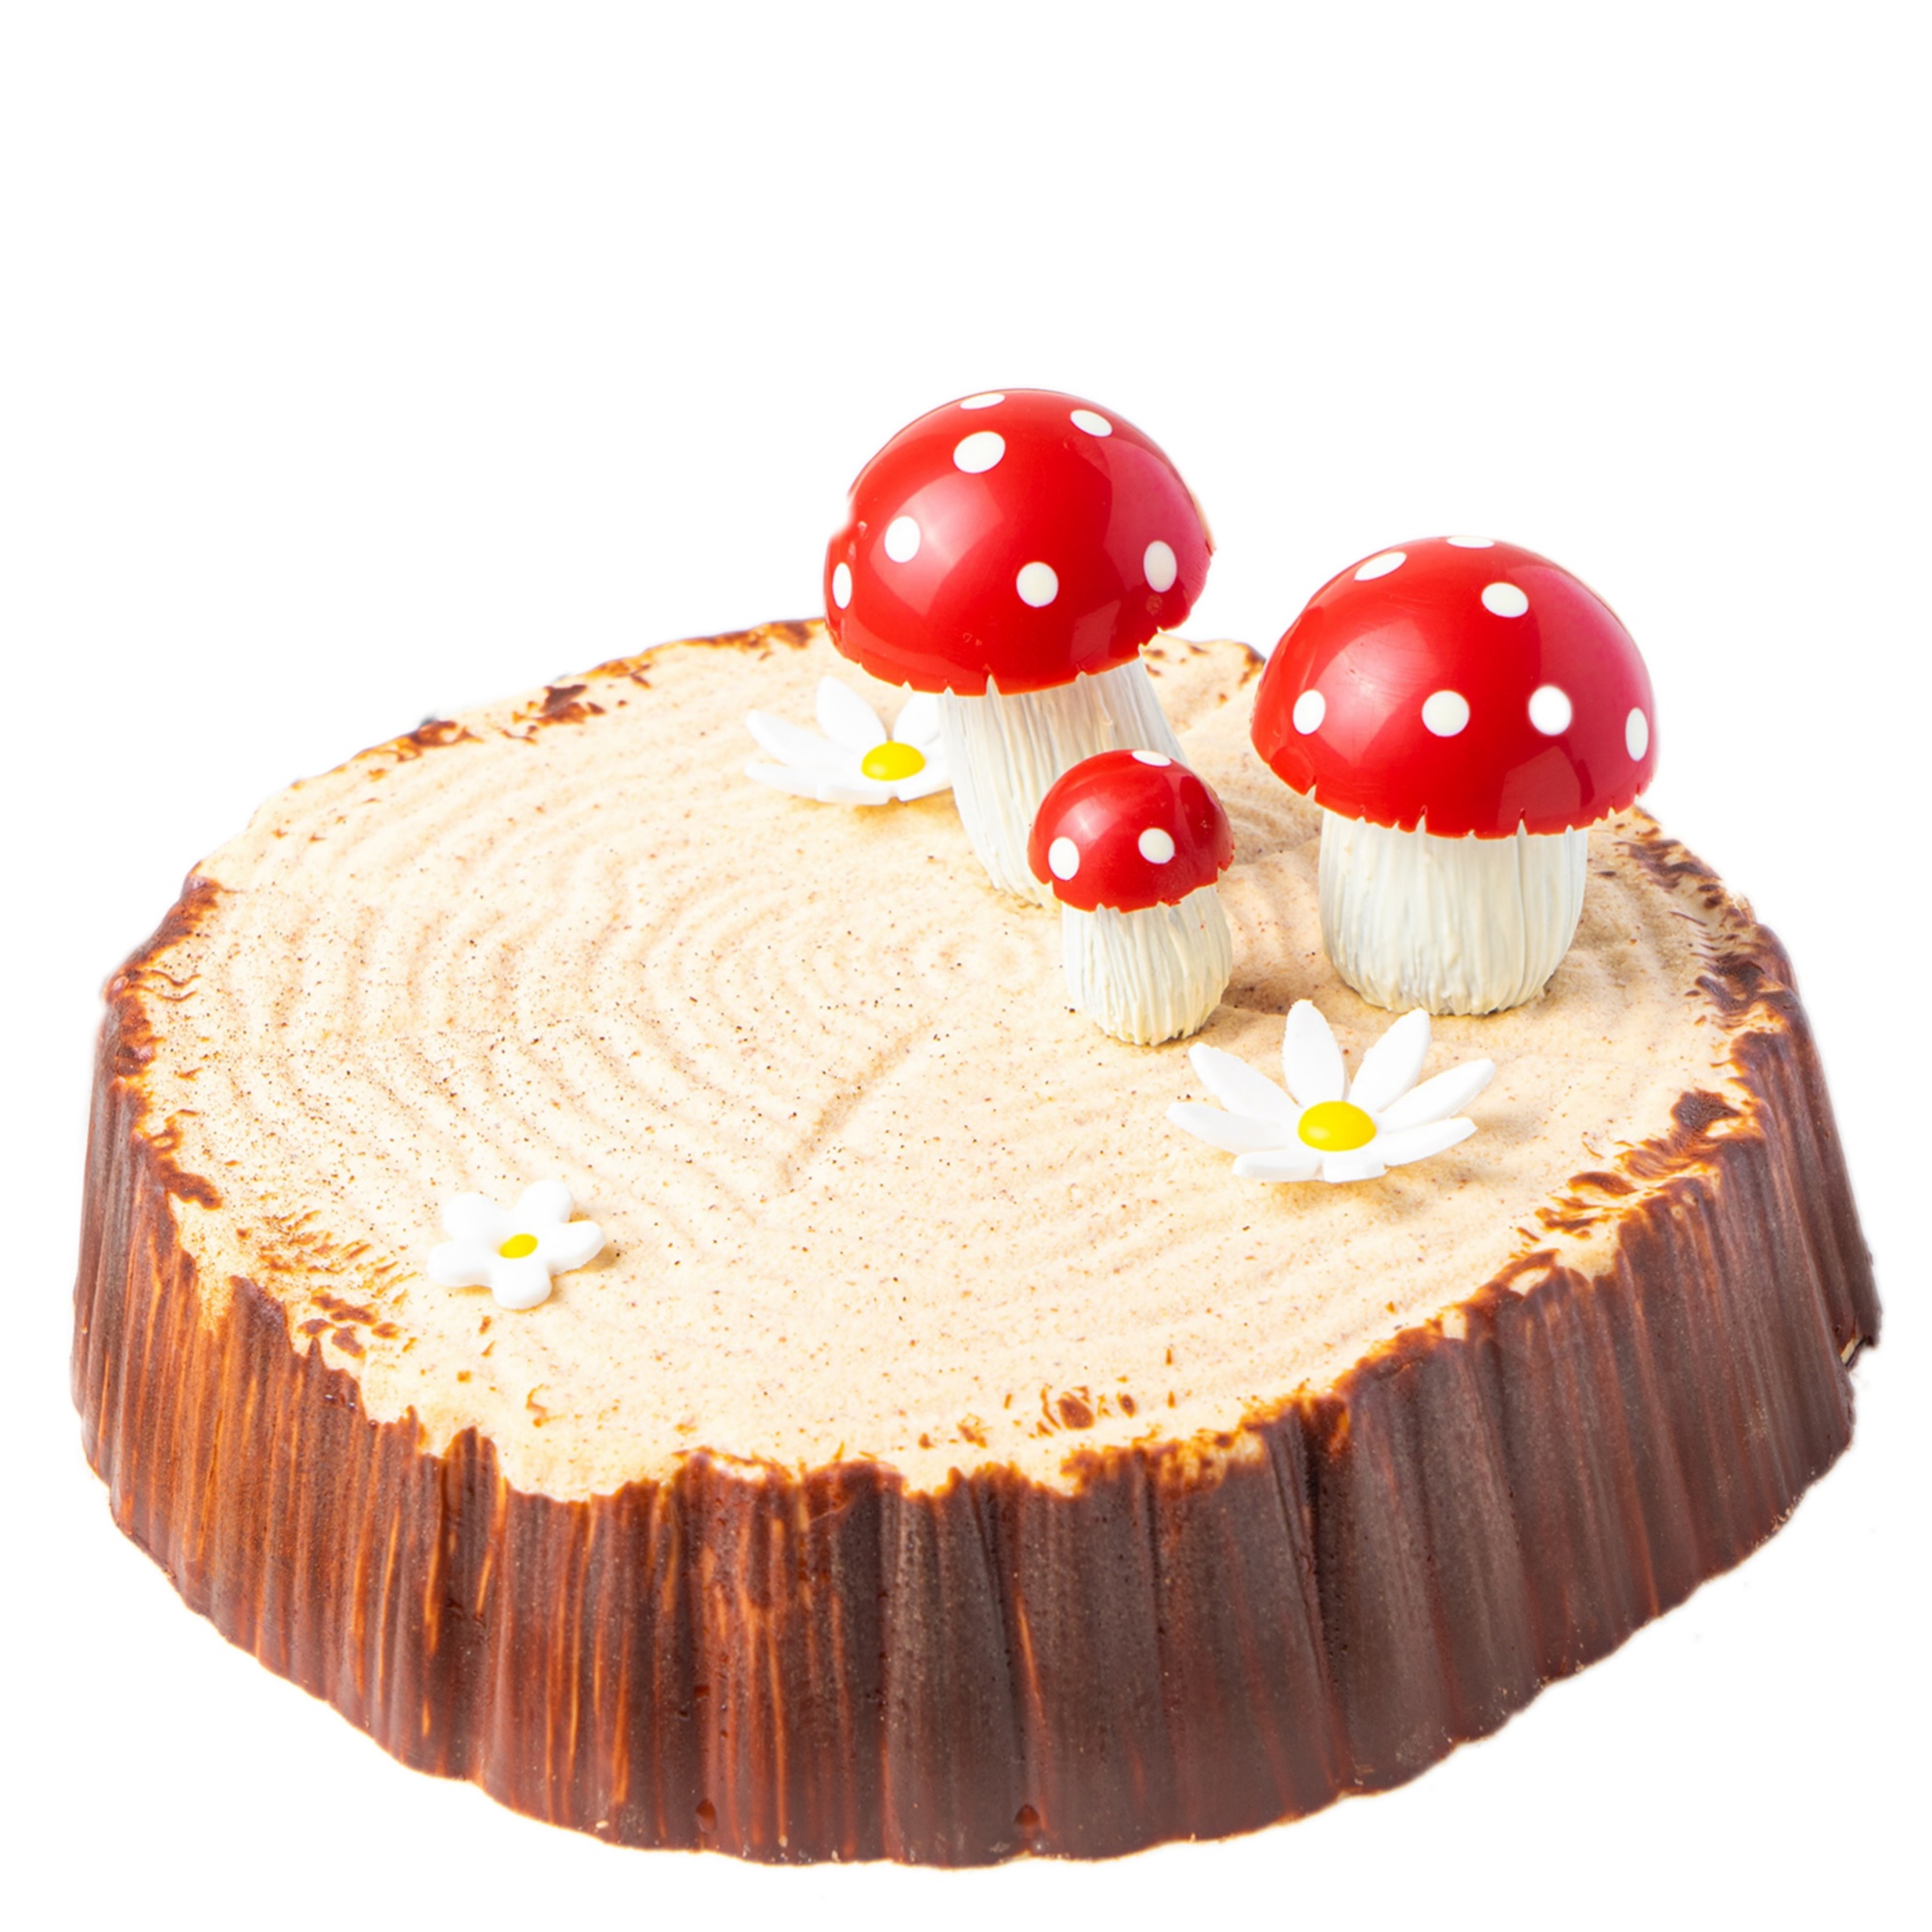 Форма для торта «Пень» пластиковая 17х4см, PCB Creation, Франция  | Фото — Магазин Andy Chef  1